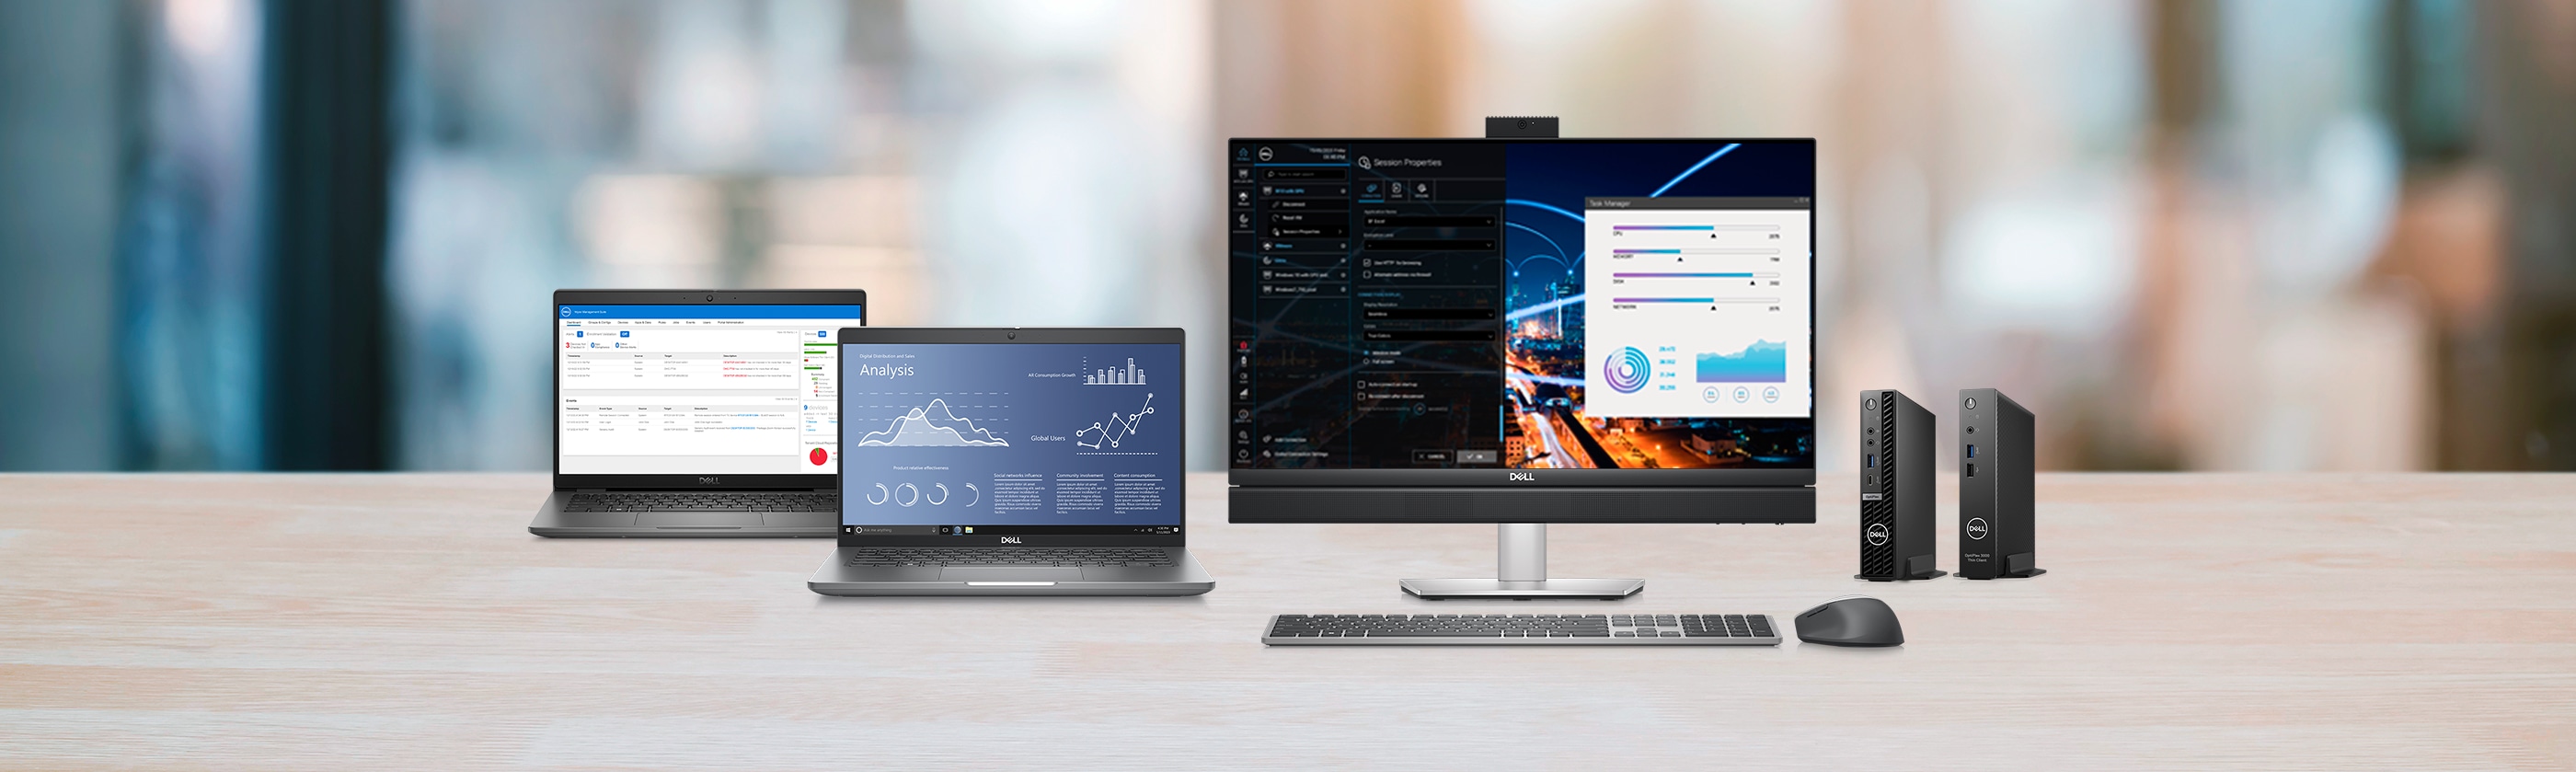 Windows 10 IoT Enterprise : une option logicielle flexible, optimisée par Dell